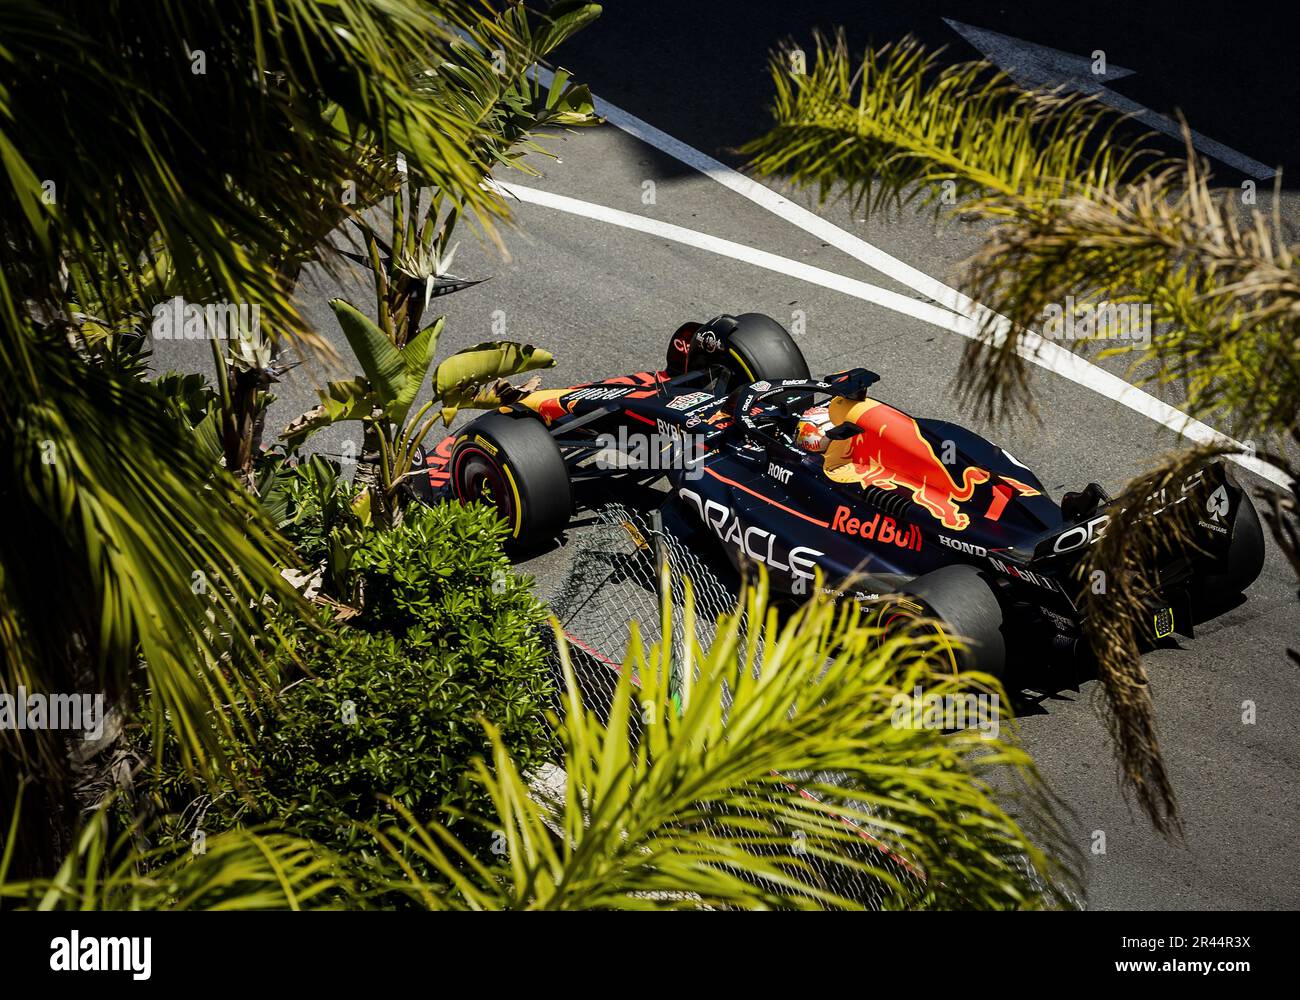 Verstappen won 80th Edition of F1 Monaco Grand Prix